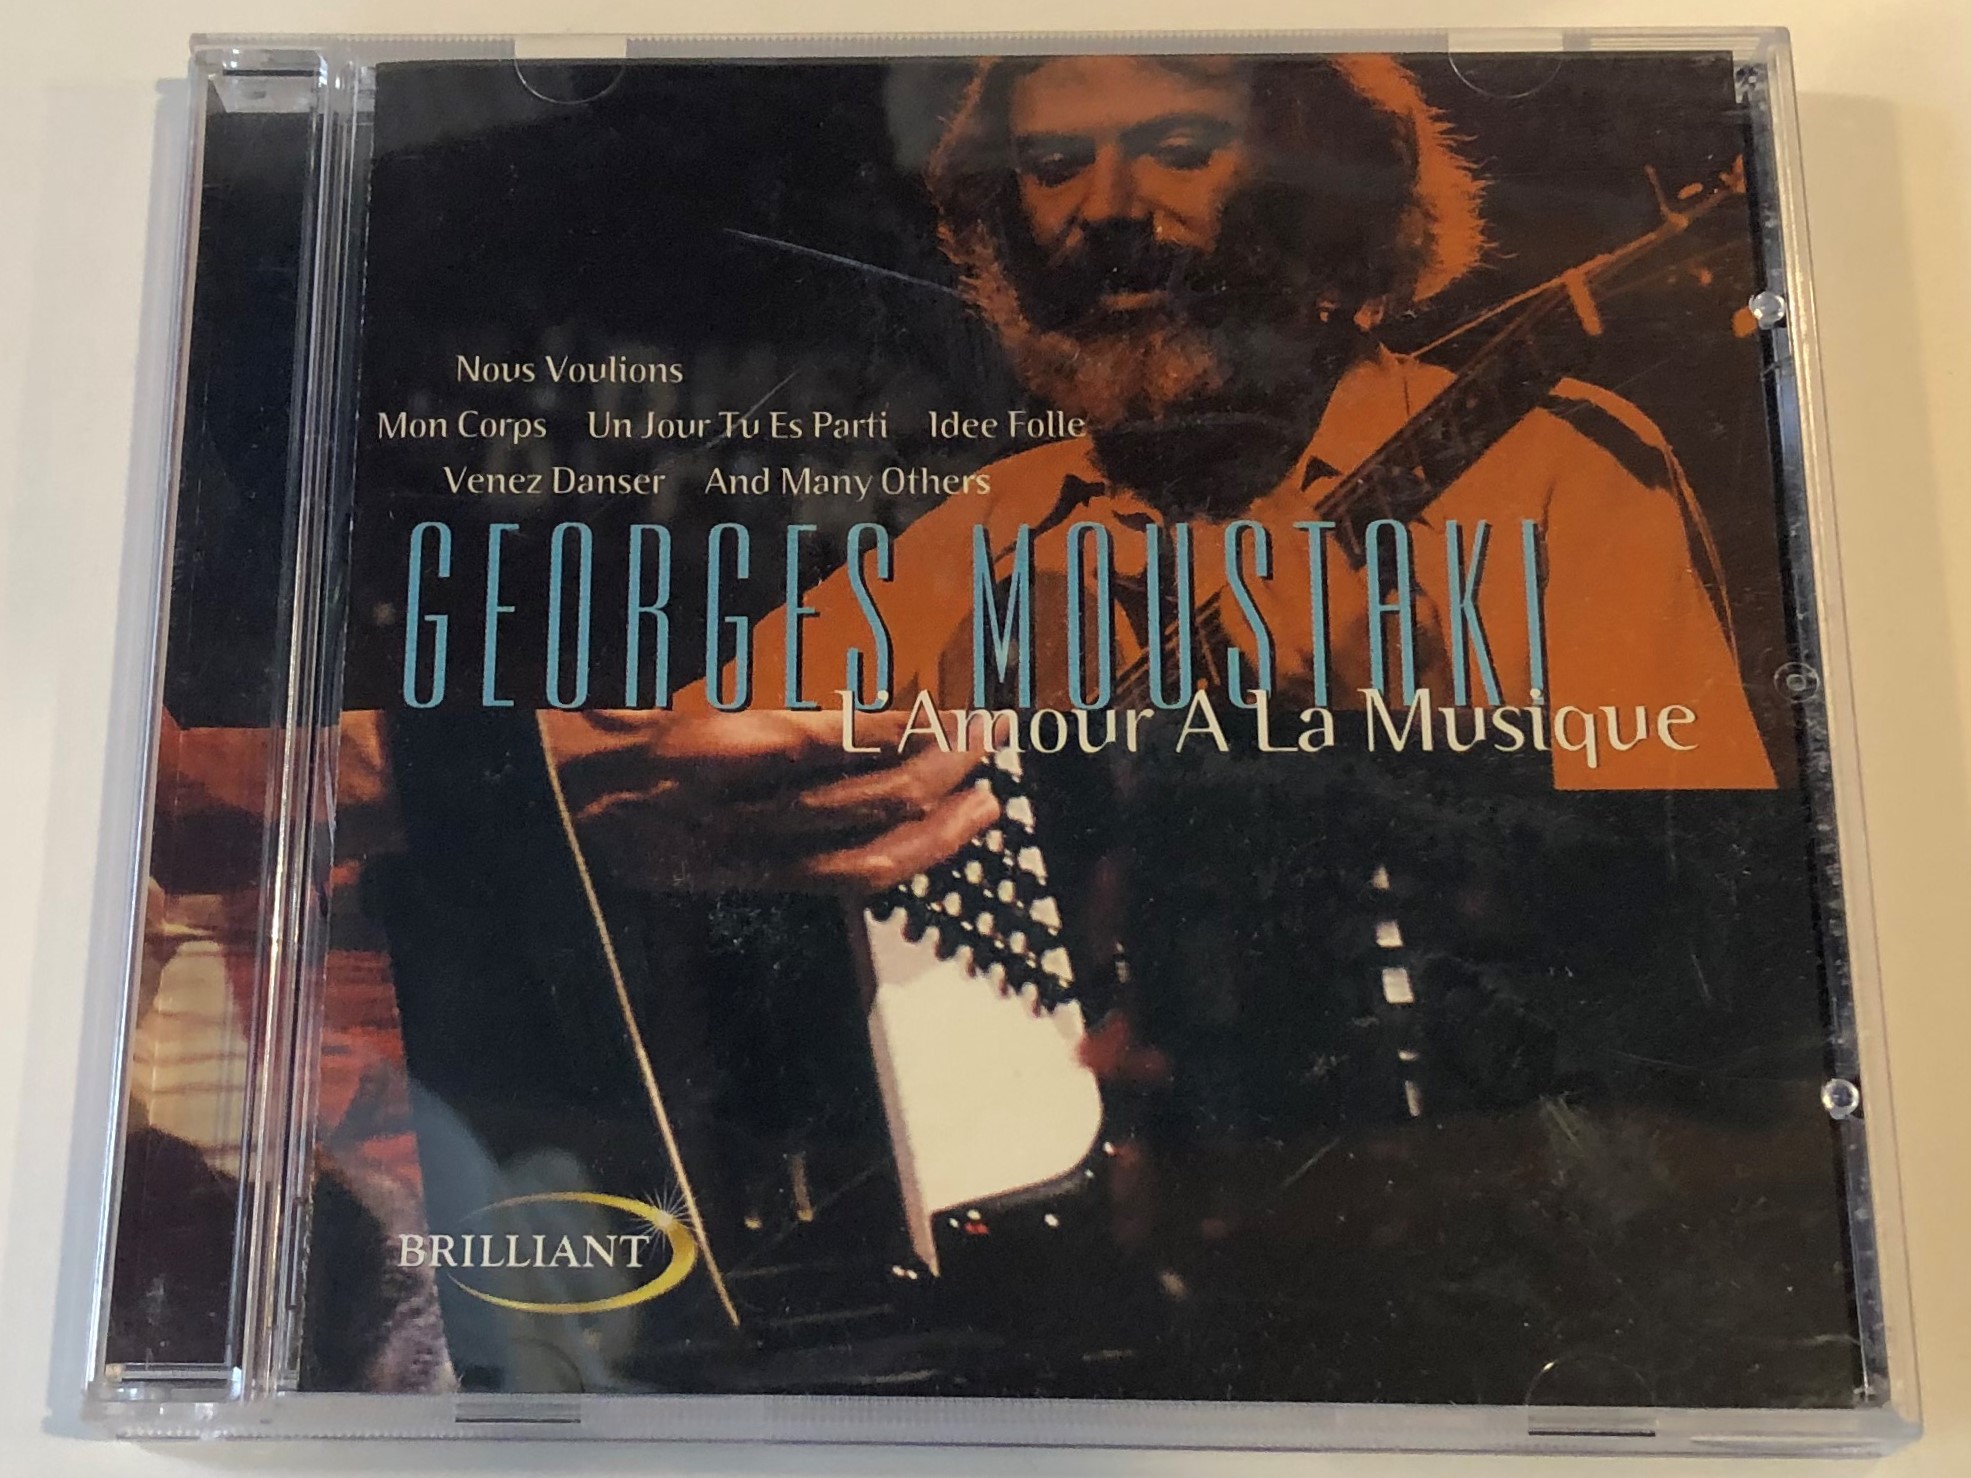 georges-moustaki-l-amour-a-la-musique-nous-voulons-mon-corps-un-jour-tu-es-parti-idee-folie-venez-danser-and-many-orhers-brilliant-audio-cd-1999-bt-33034-1-.jpg